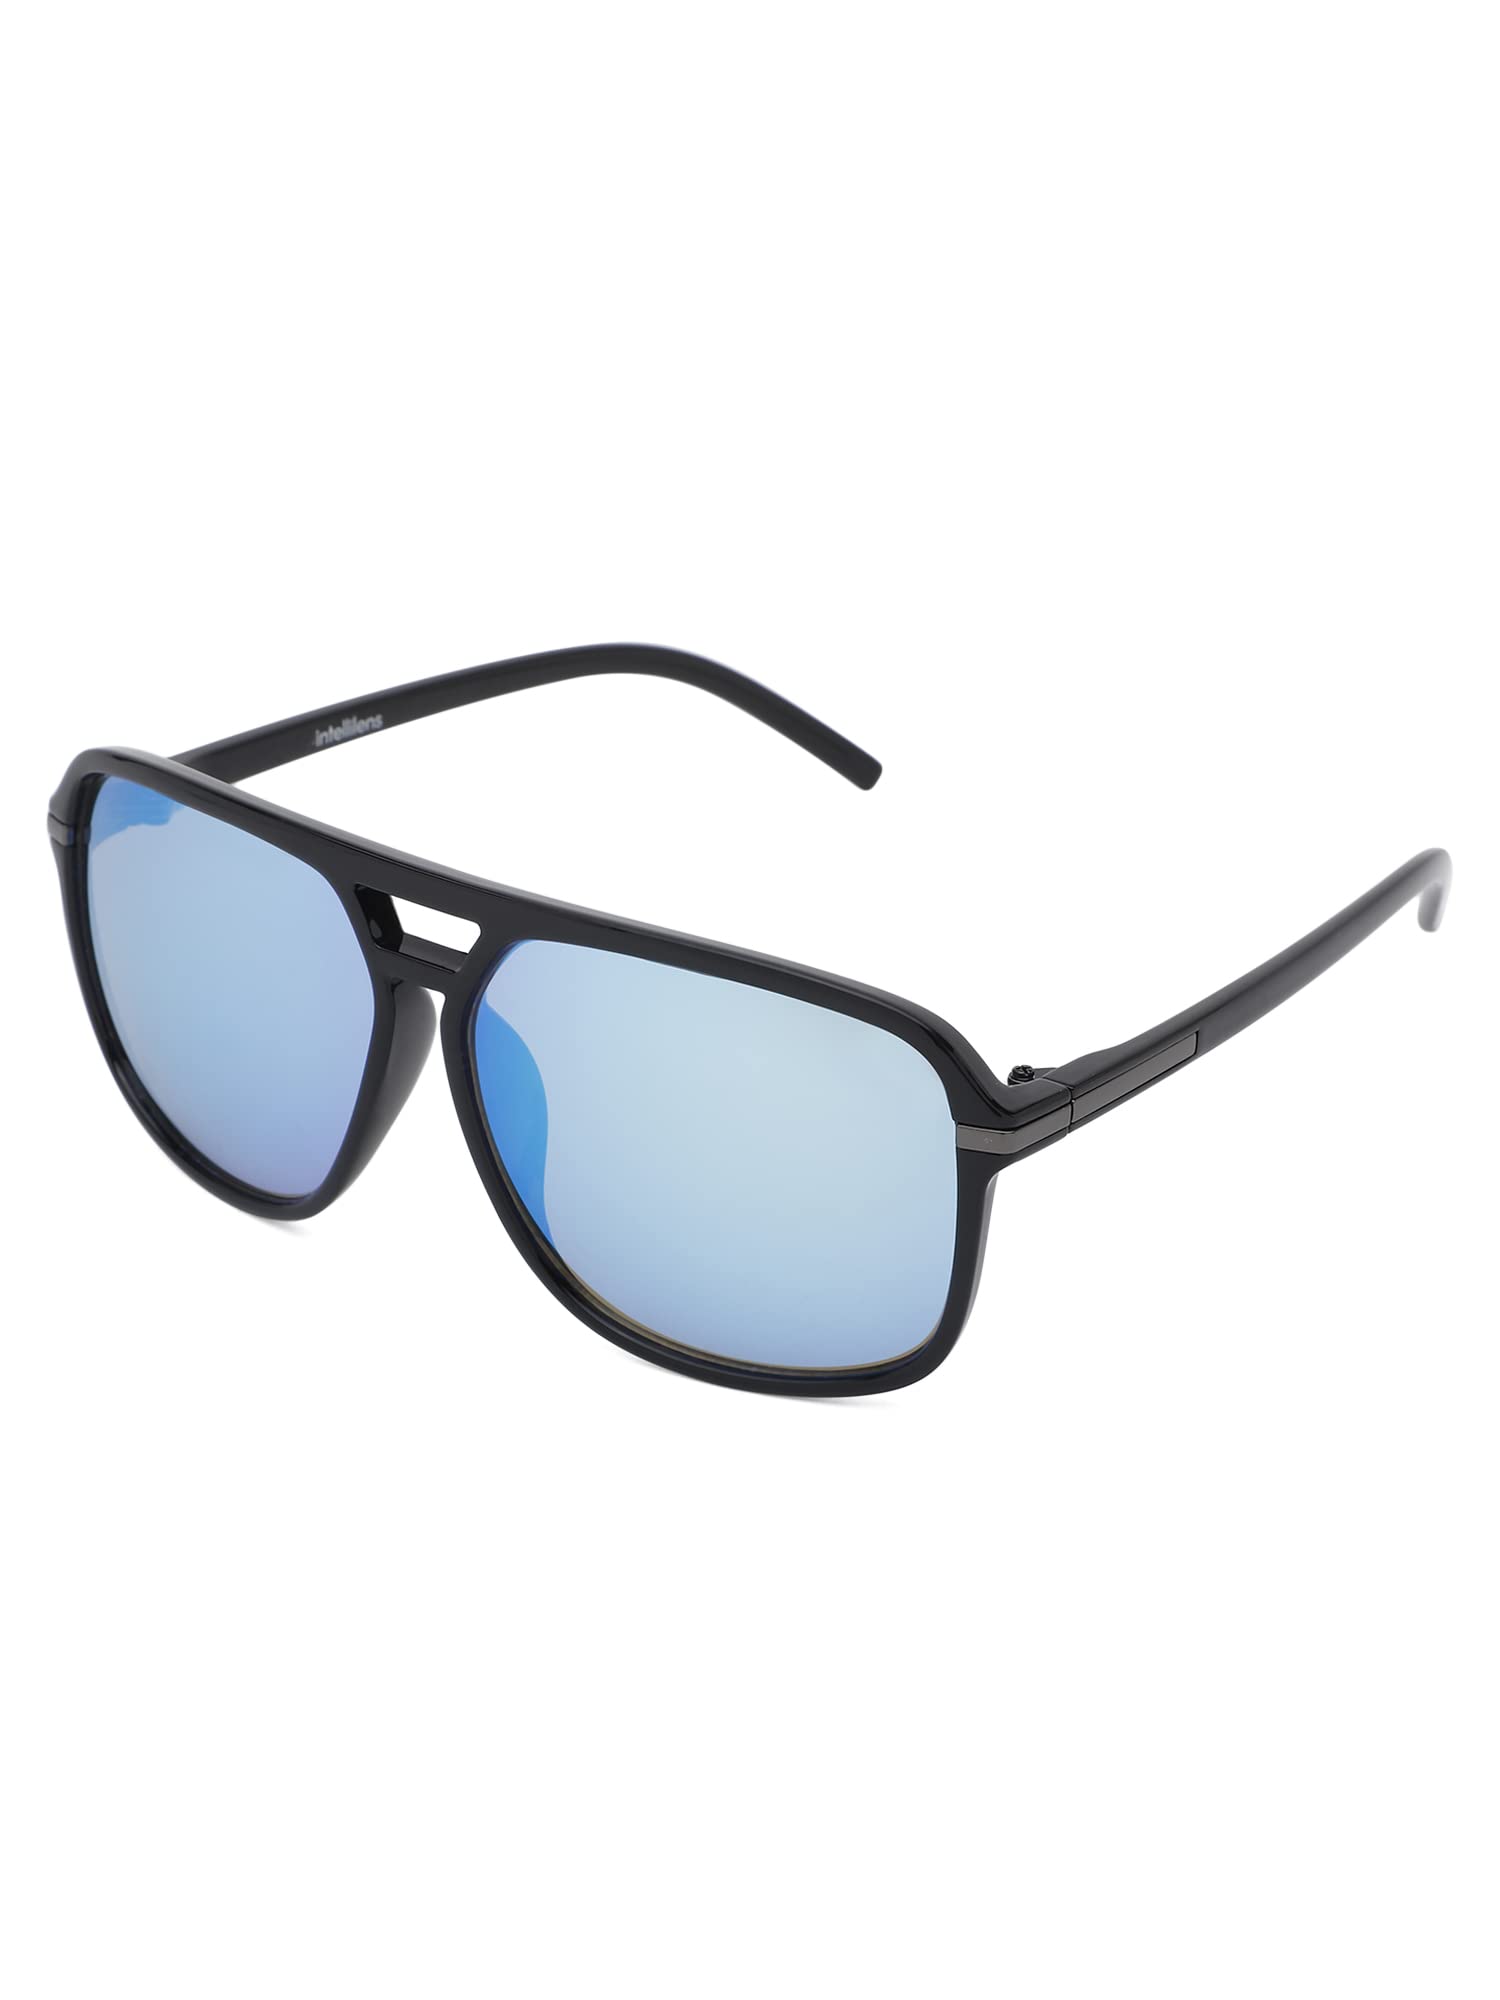 Intellilens Pilot UV Protection Sunglasses For Men & Women